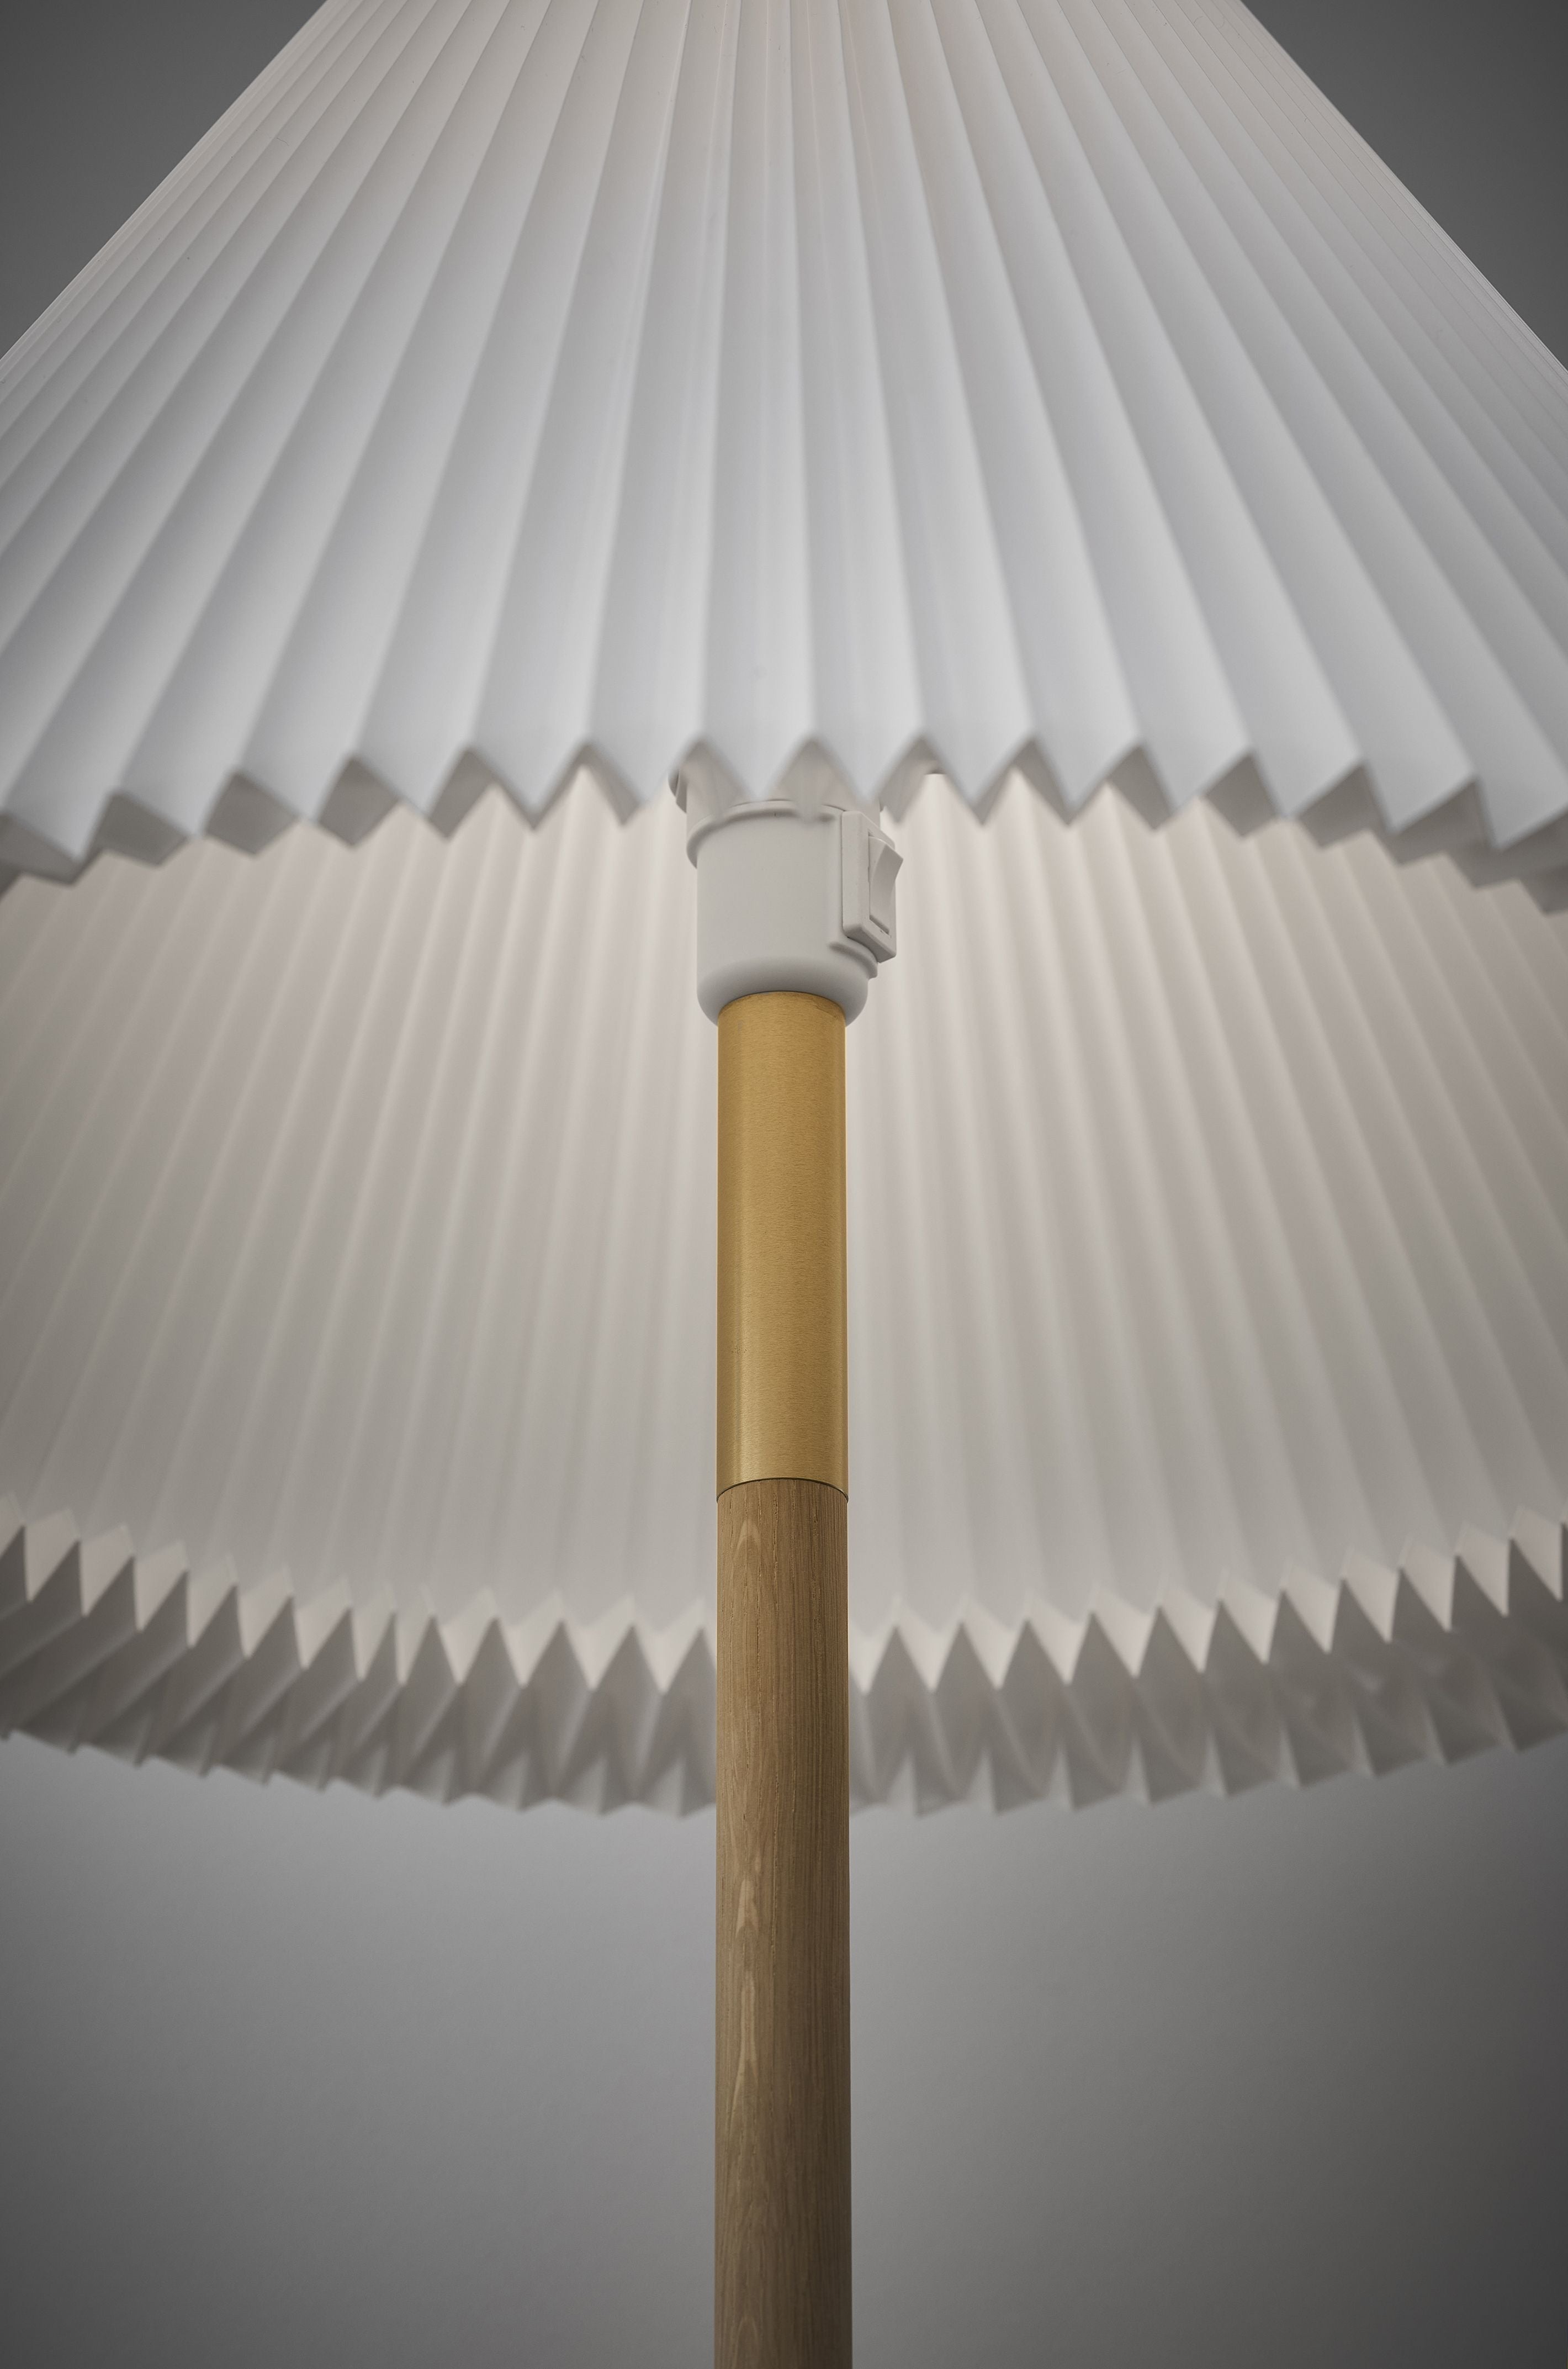 Le Klint 328 Lampe de plancher, Chêne de lumière